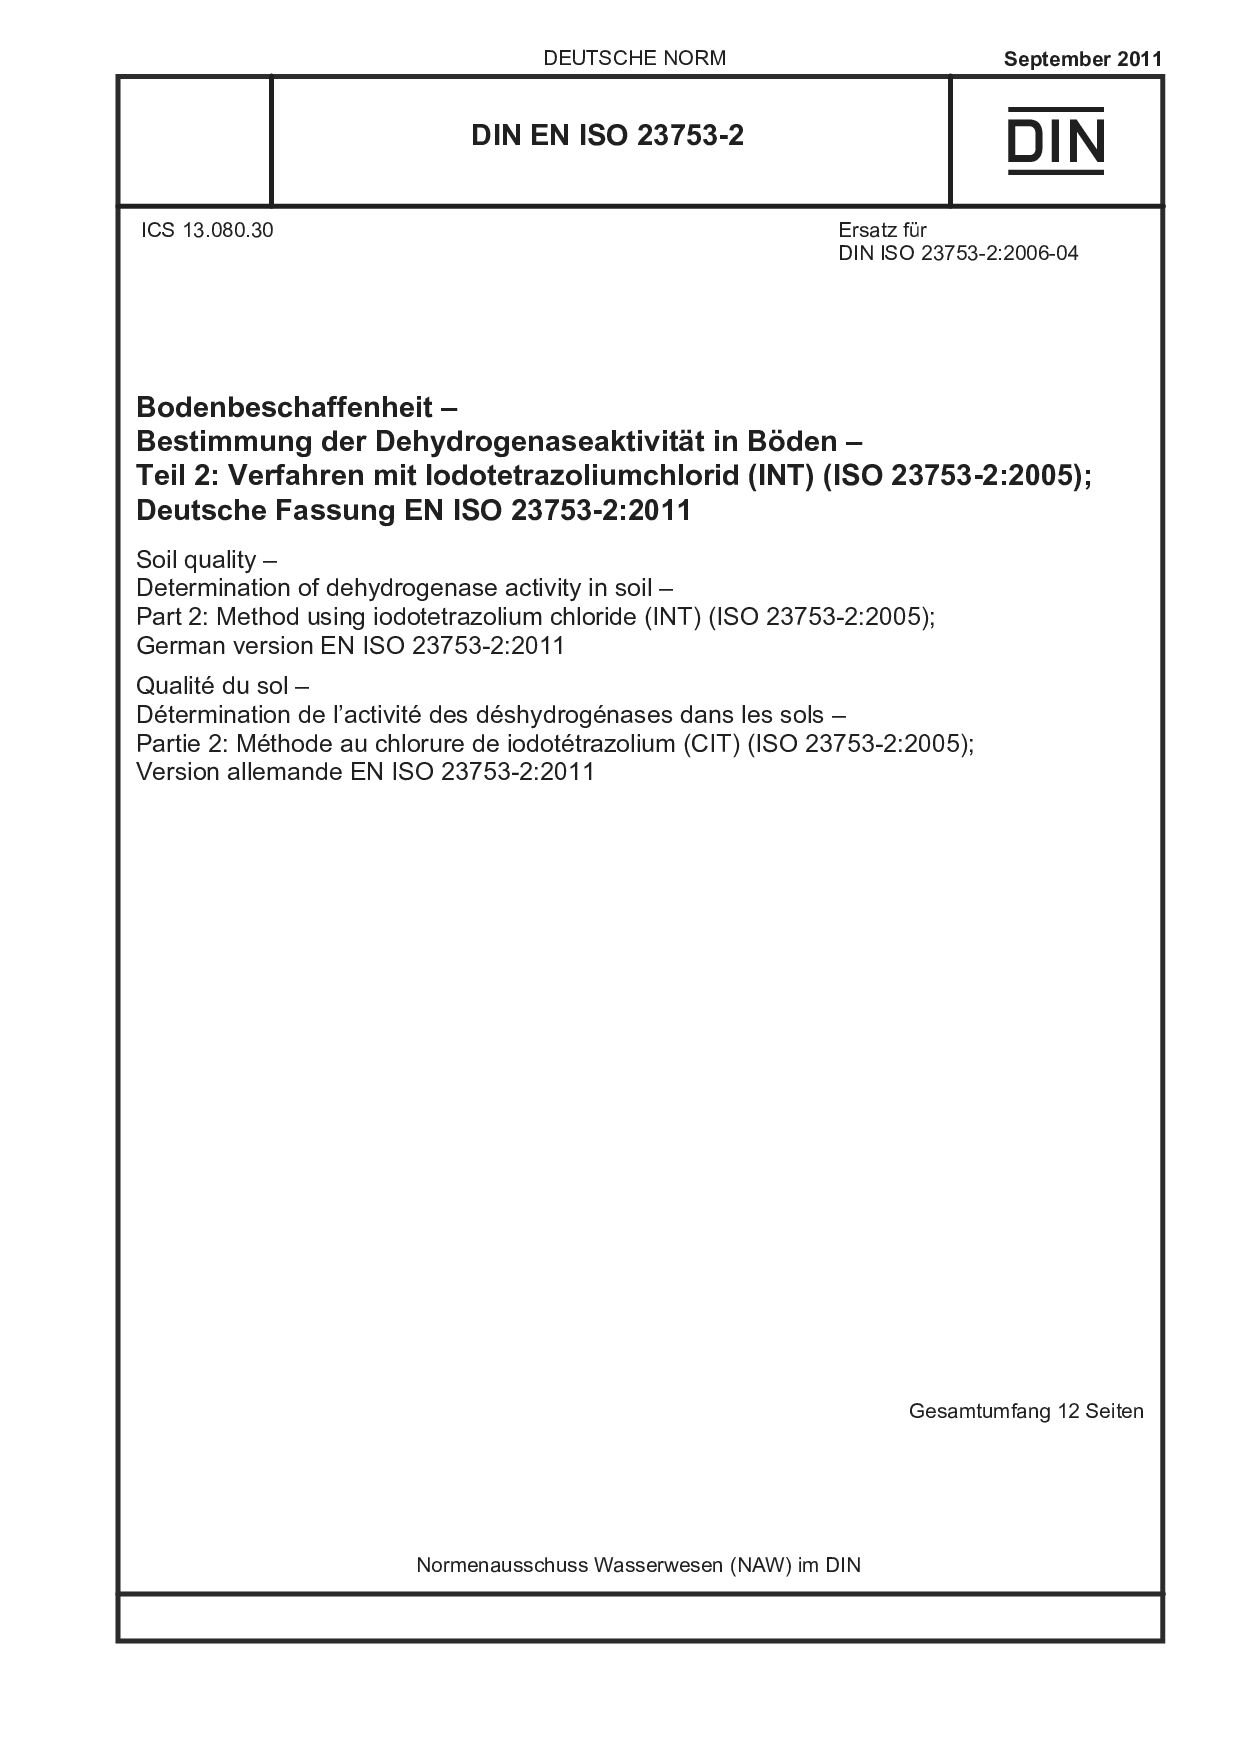 DIN EN ISO 23753-2:2011封面图